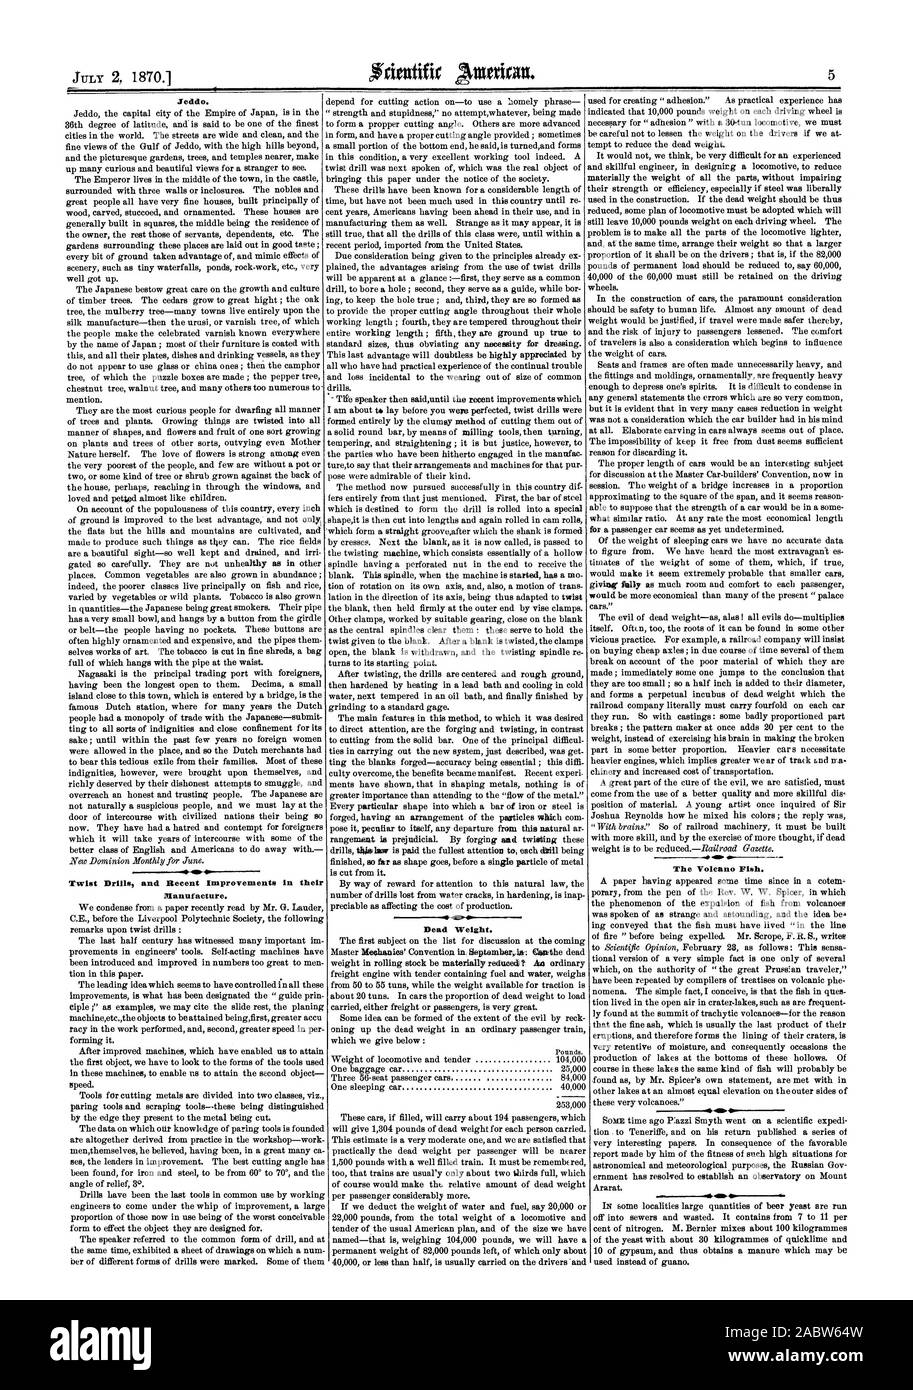 Jeddo. Spiralbohrer und die jüngsten Verbesserungen in der Herstellung. Eigengewicht. Der Vulkan Fisch., Scientific American, 1870-07-02 Stockfoto